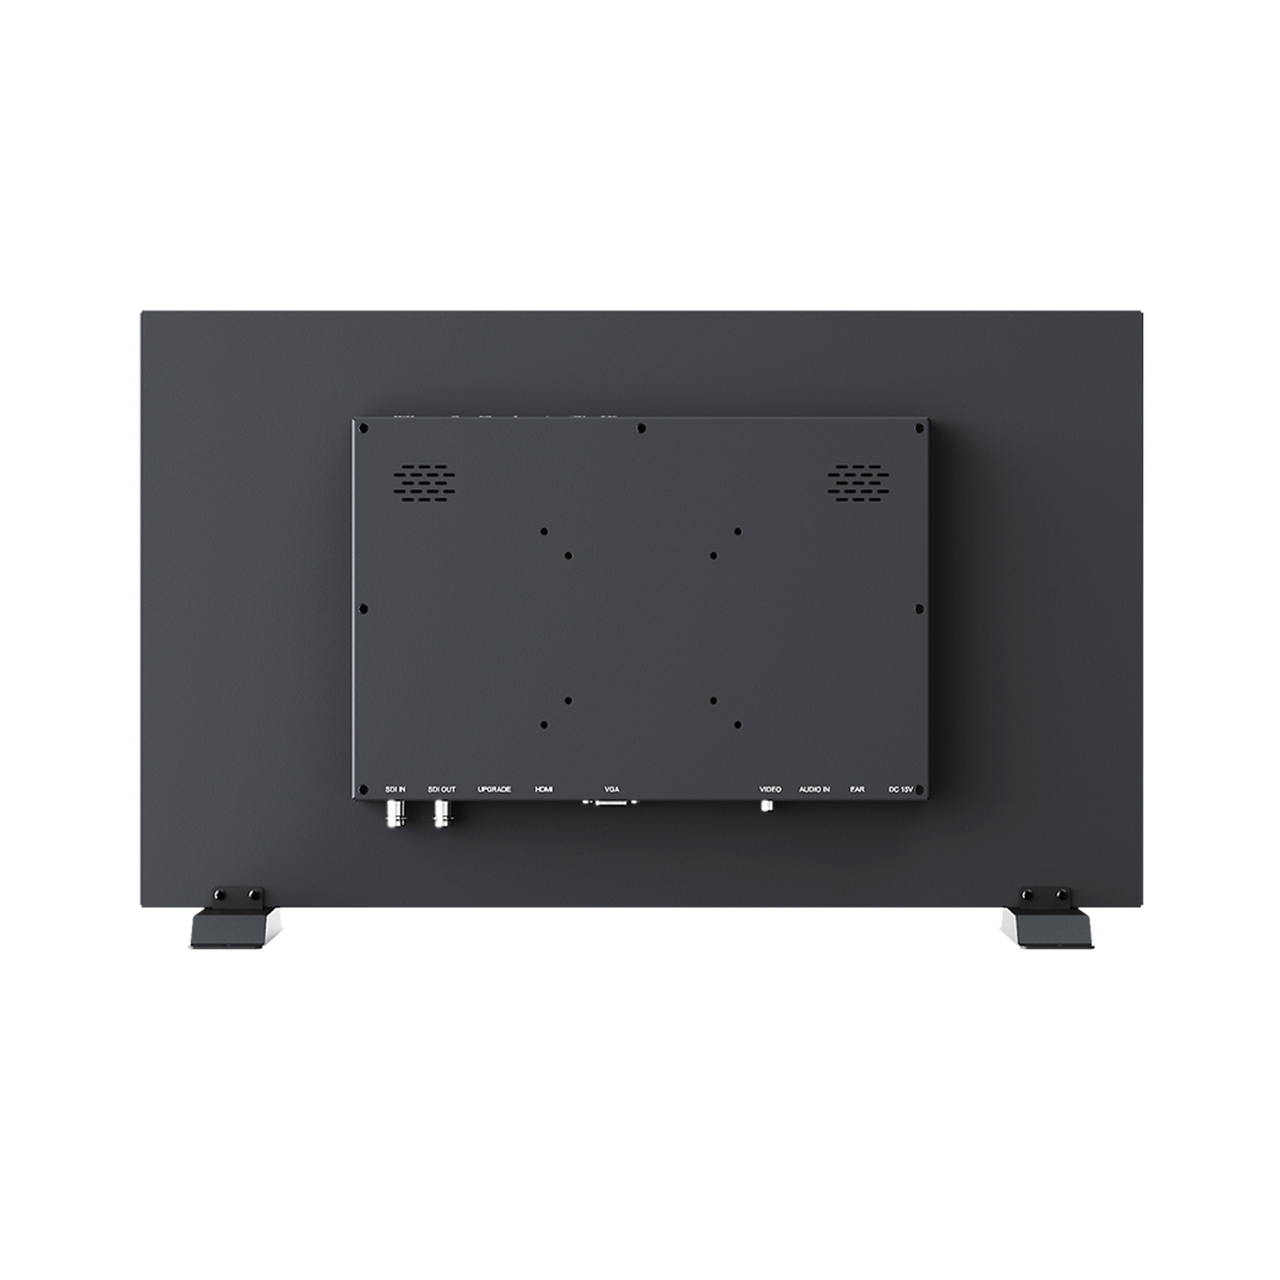 PVM210S 21.5 inch SDI/HDMI professional video monitor